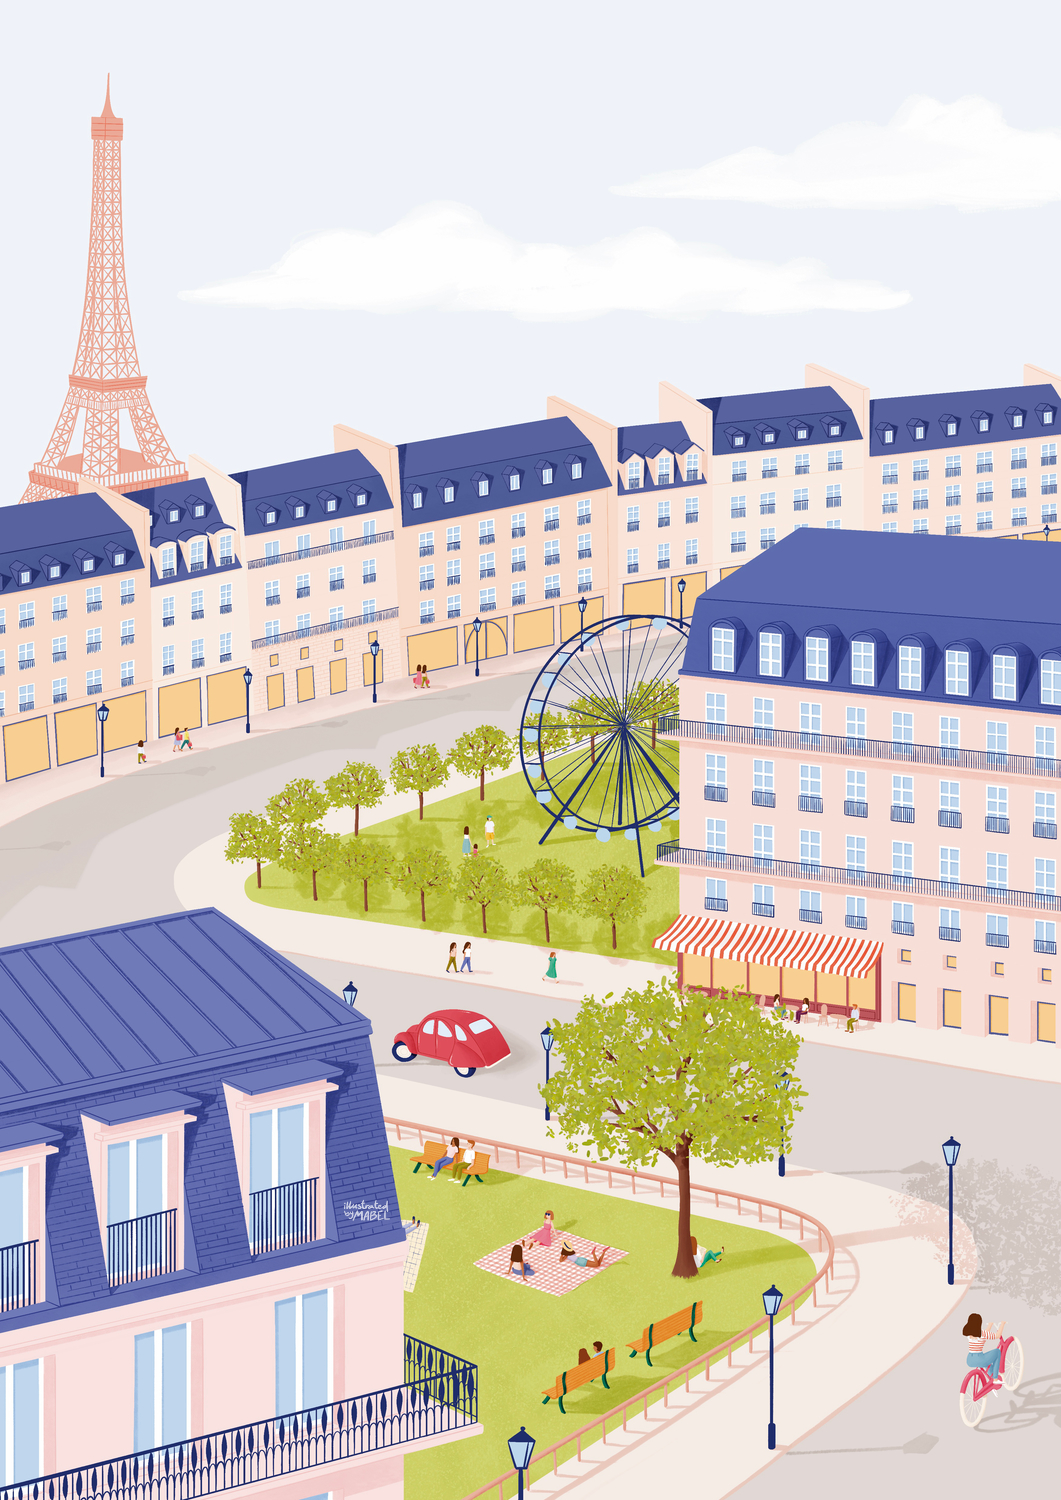 Paris in spring illustration